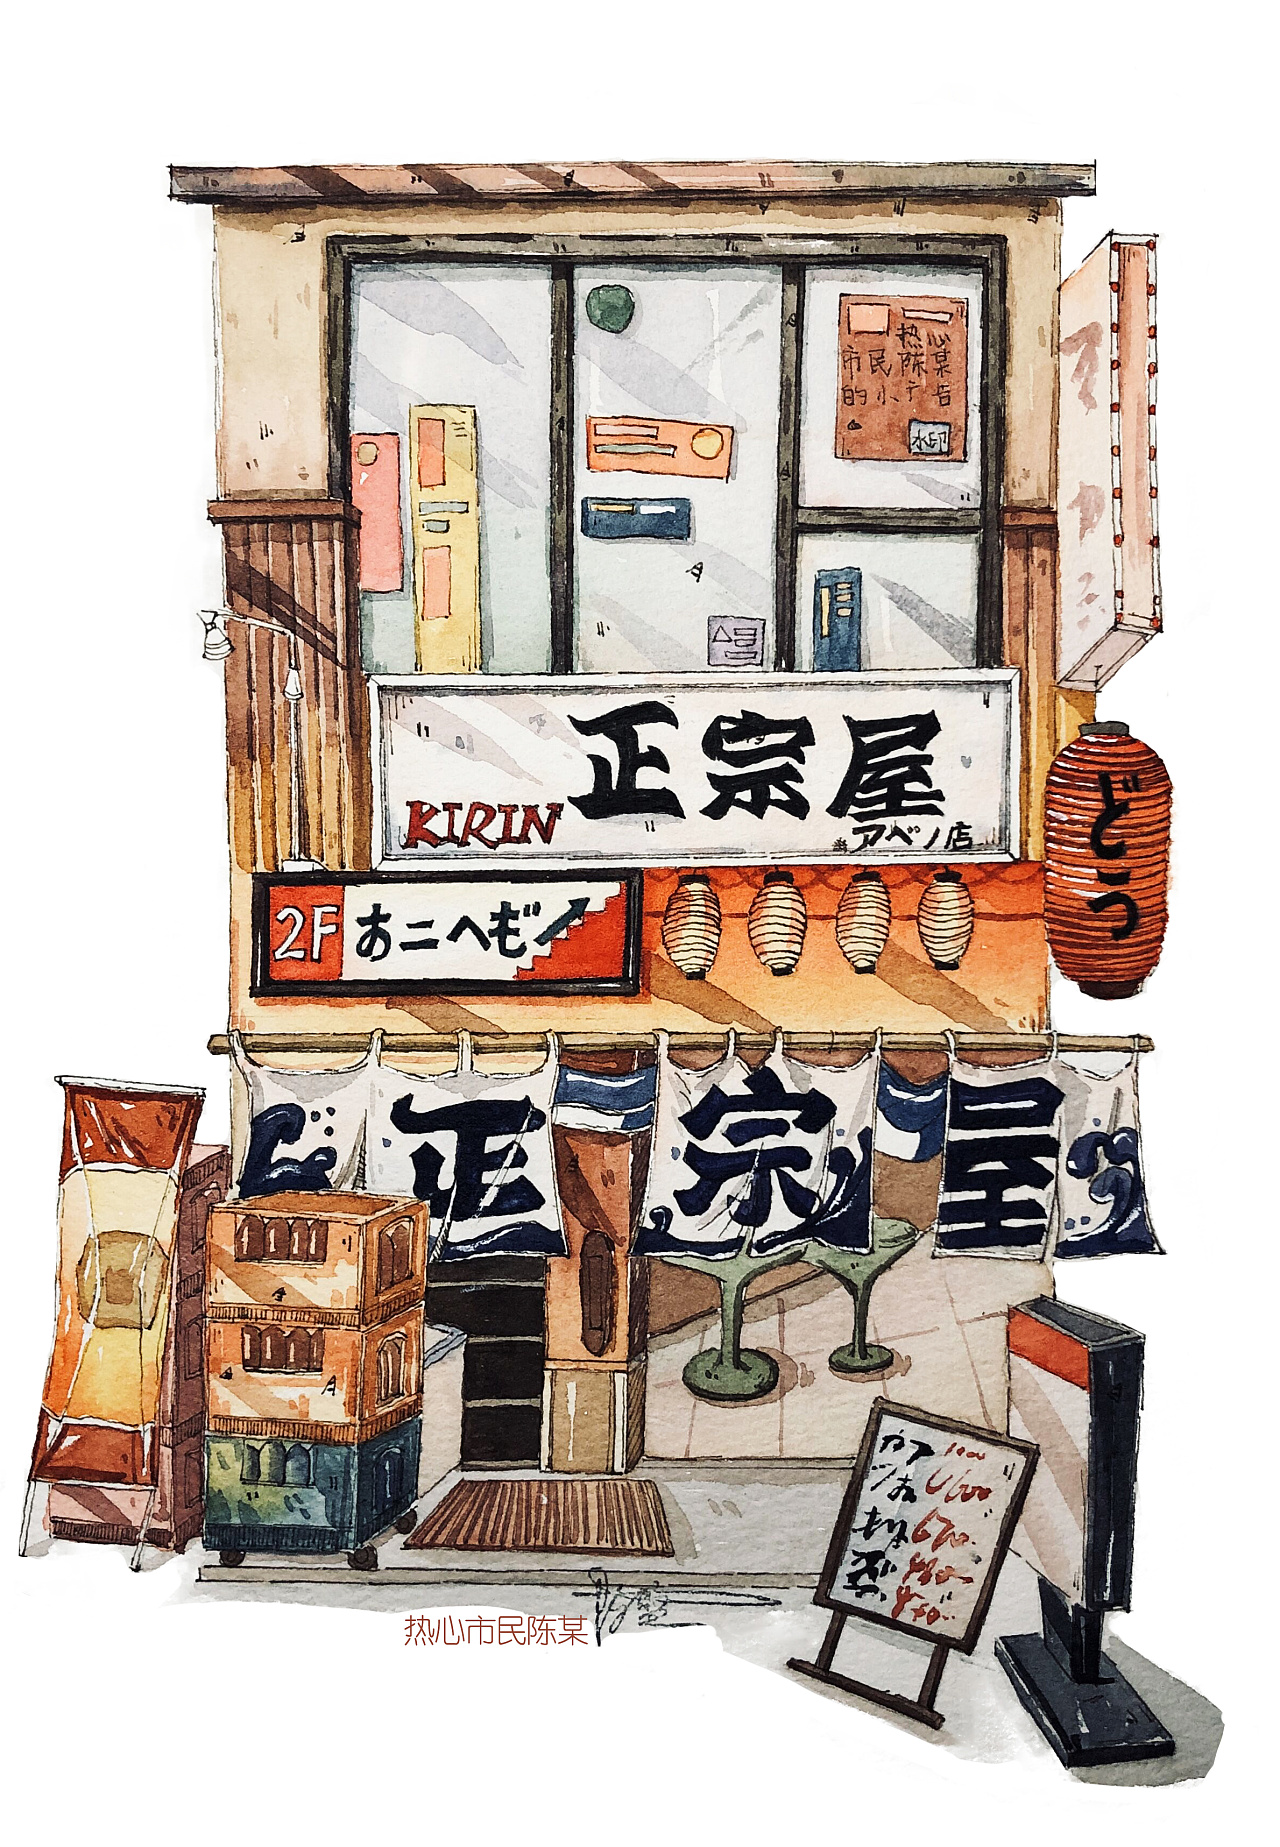 水彩手绘,日式建筑,日式店铺,日式小房子,钢笔淡彩